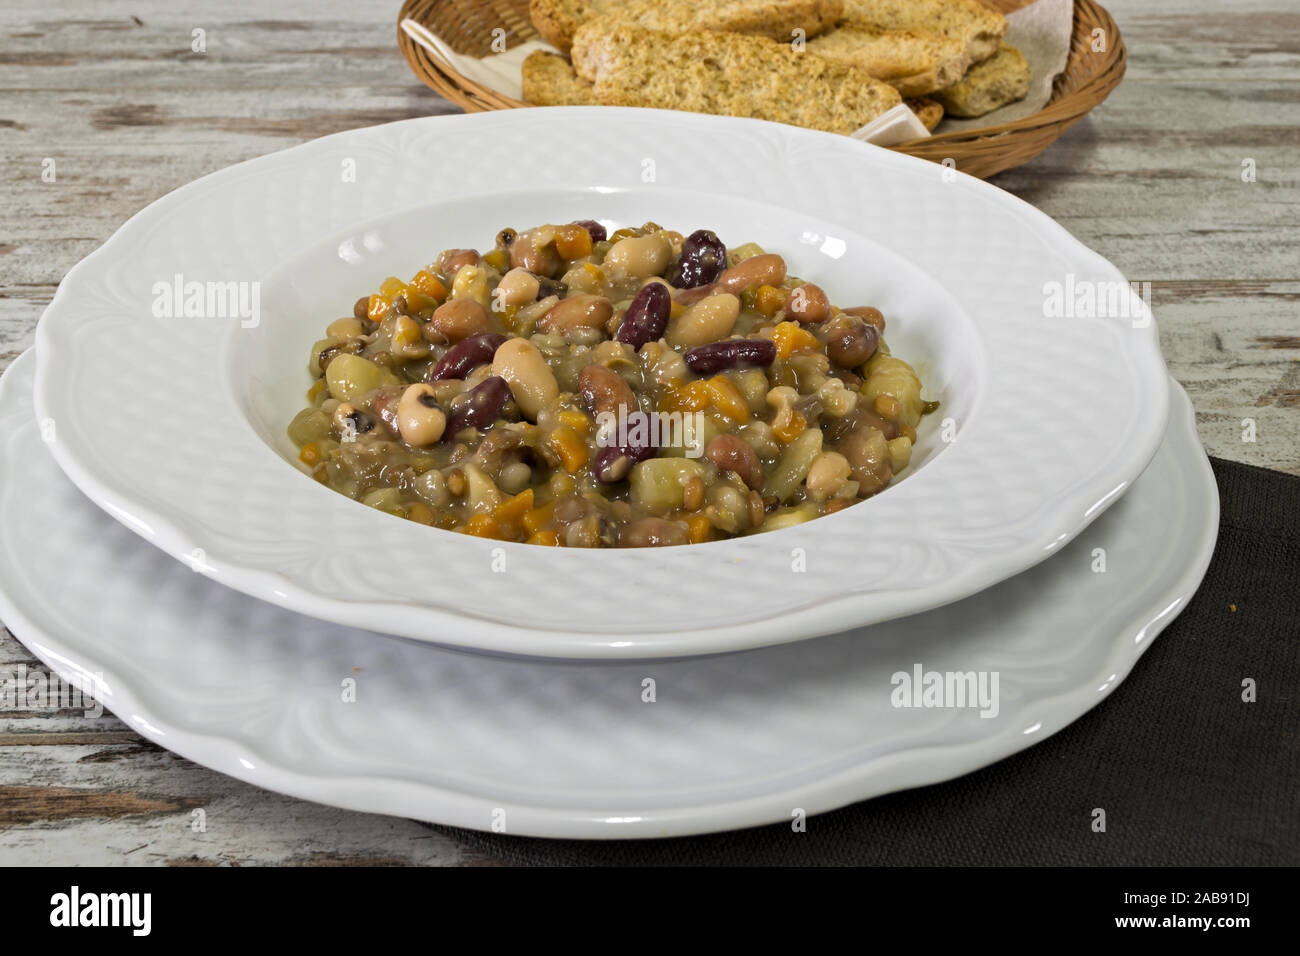 Piatto zuppa di legumi Vista frontale Stockfoto